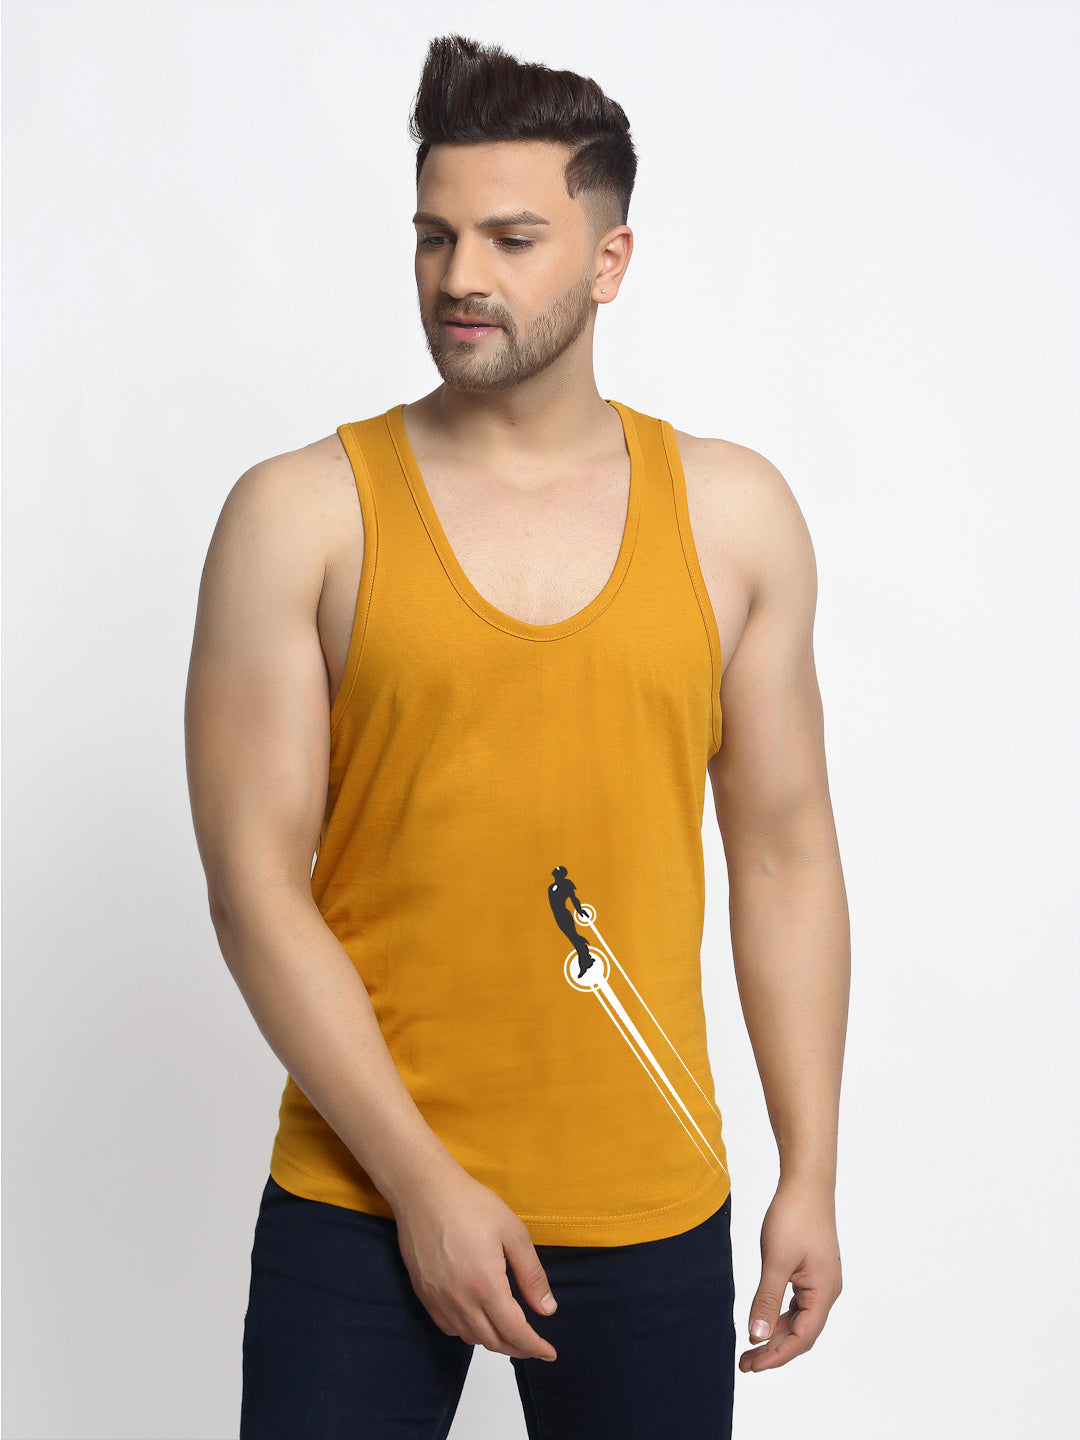 Men's Pack of 2 Black & Mustard Printed Gym Vest - Friskers